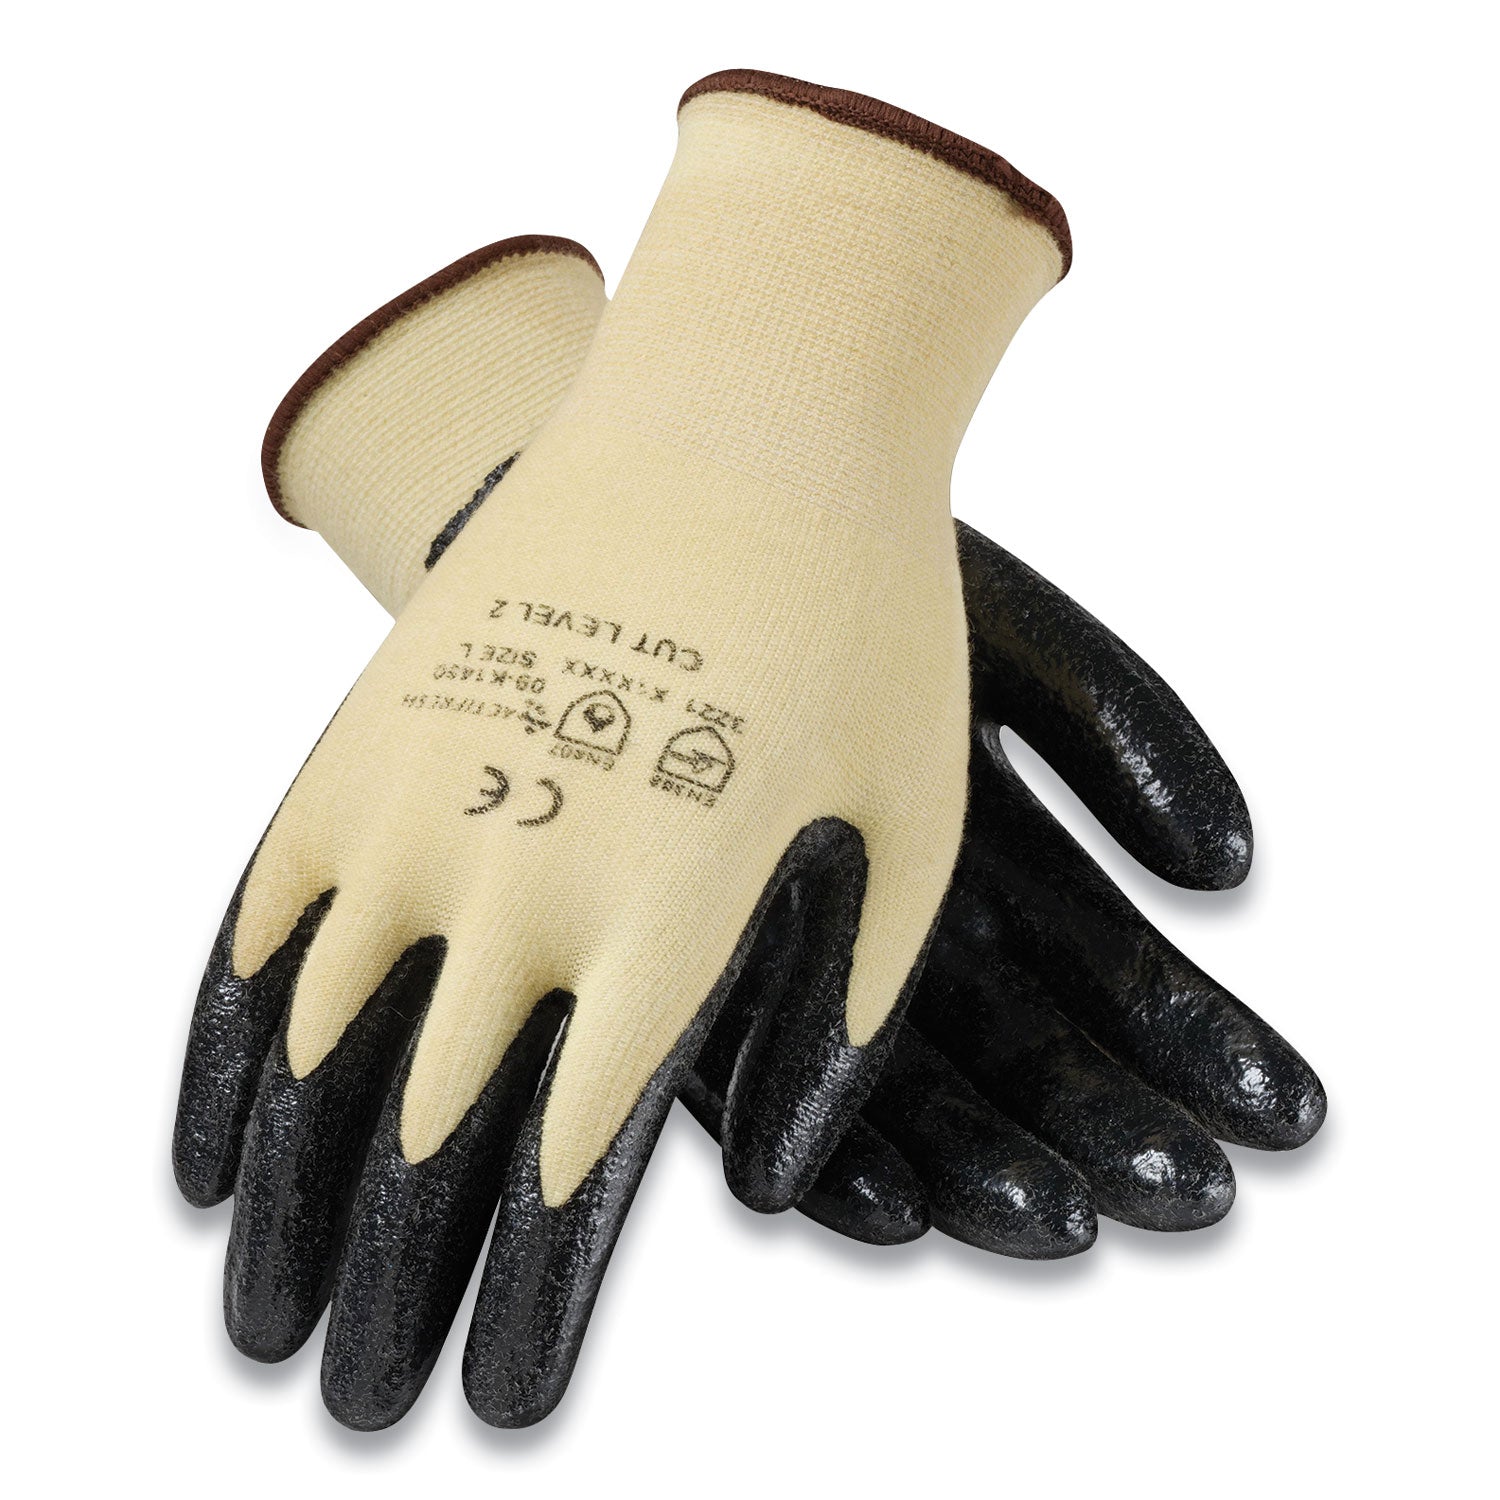 kev-seamless-knit-kevlar-gloves-large-yellow-black-12-pairs_pid09k1450l - 1